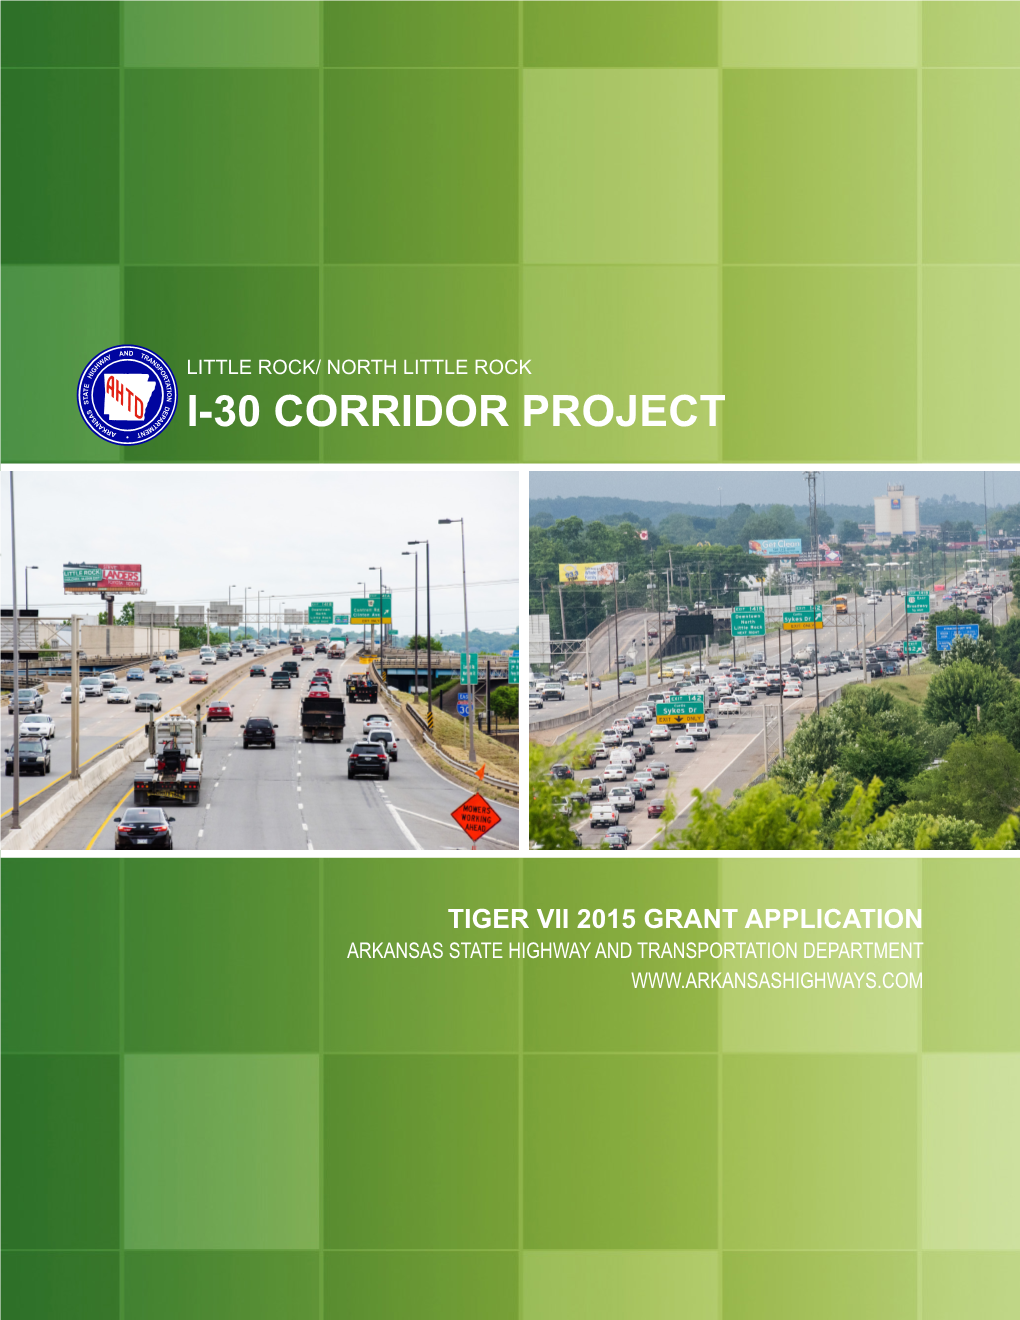 I-30 Corridor Project